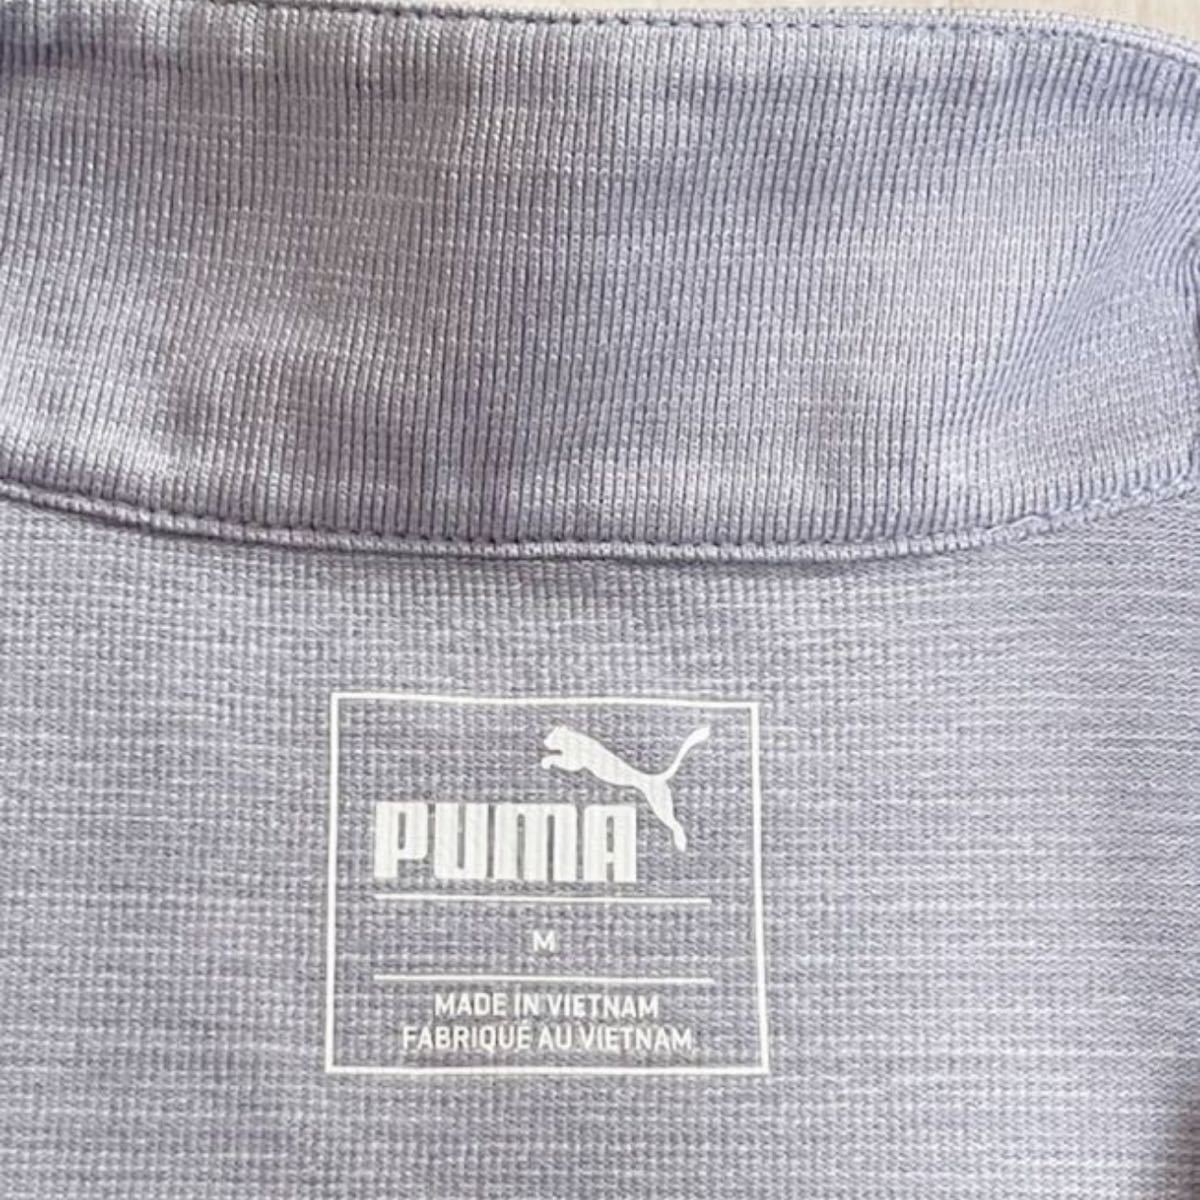 PUMA プーマ ゴルフウェア 半袖 ハーフジップ シャツ Mサイズ レディース